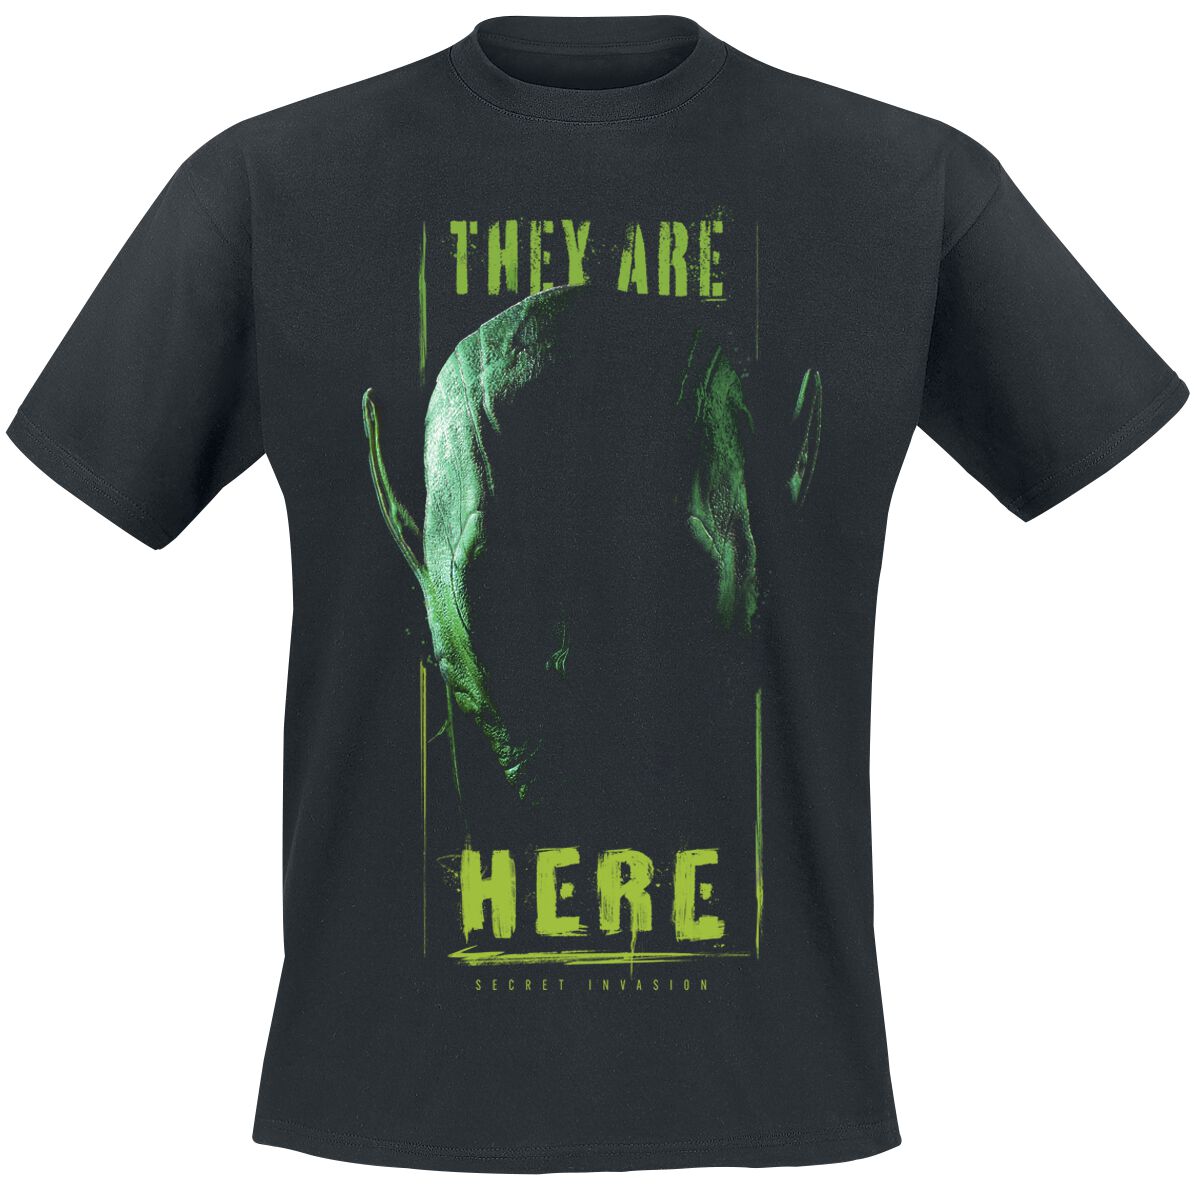 Secret Invasion - Marvel T-Shirt - They Are Here - S bis XXL - für Männer - Größe XXL - schwarz  - EMP exklusives Merchandise!